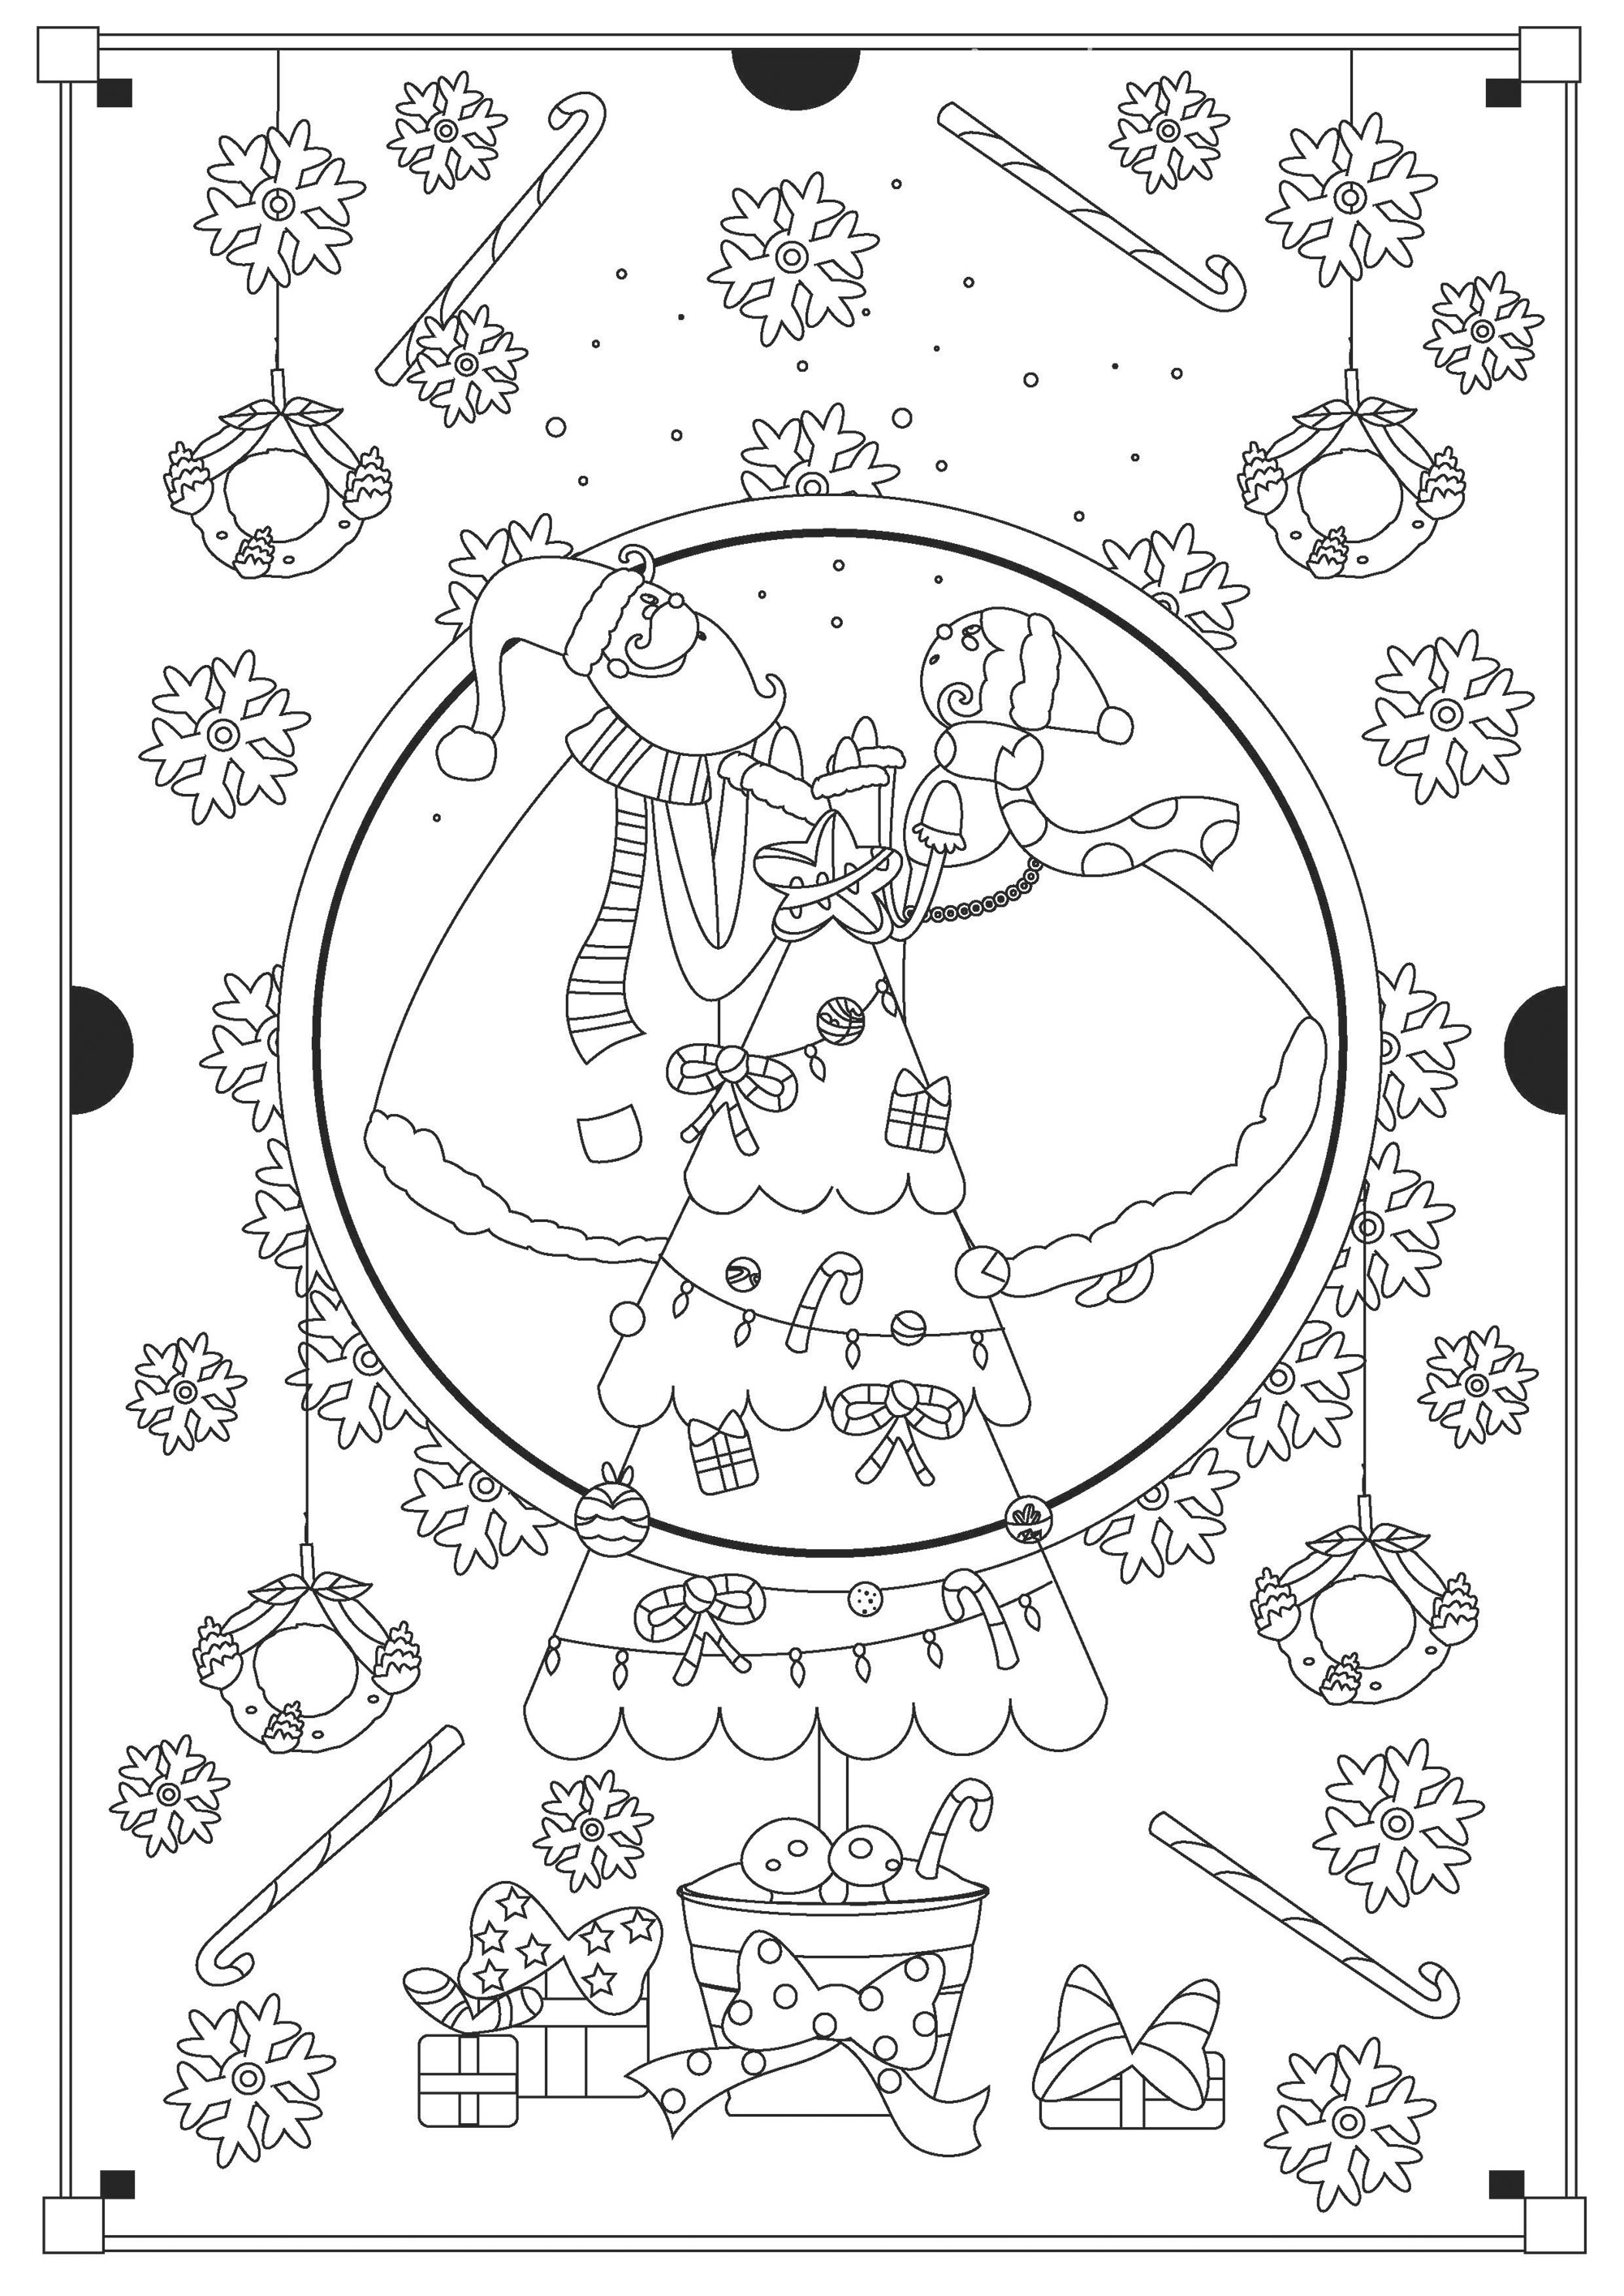 Páginas para colorear de Navidad con Papá Noel y la Sra. Claus. Montones de objetos navideños para colorear alrededor de los personajes y del bonito árbol de Navidad: regalos, caramelos, copos de nieve, etc, Artista : Gaelle Picard